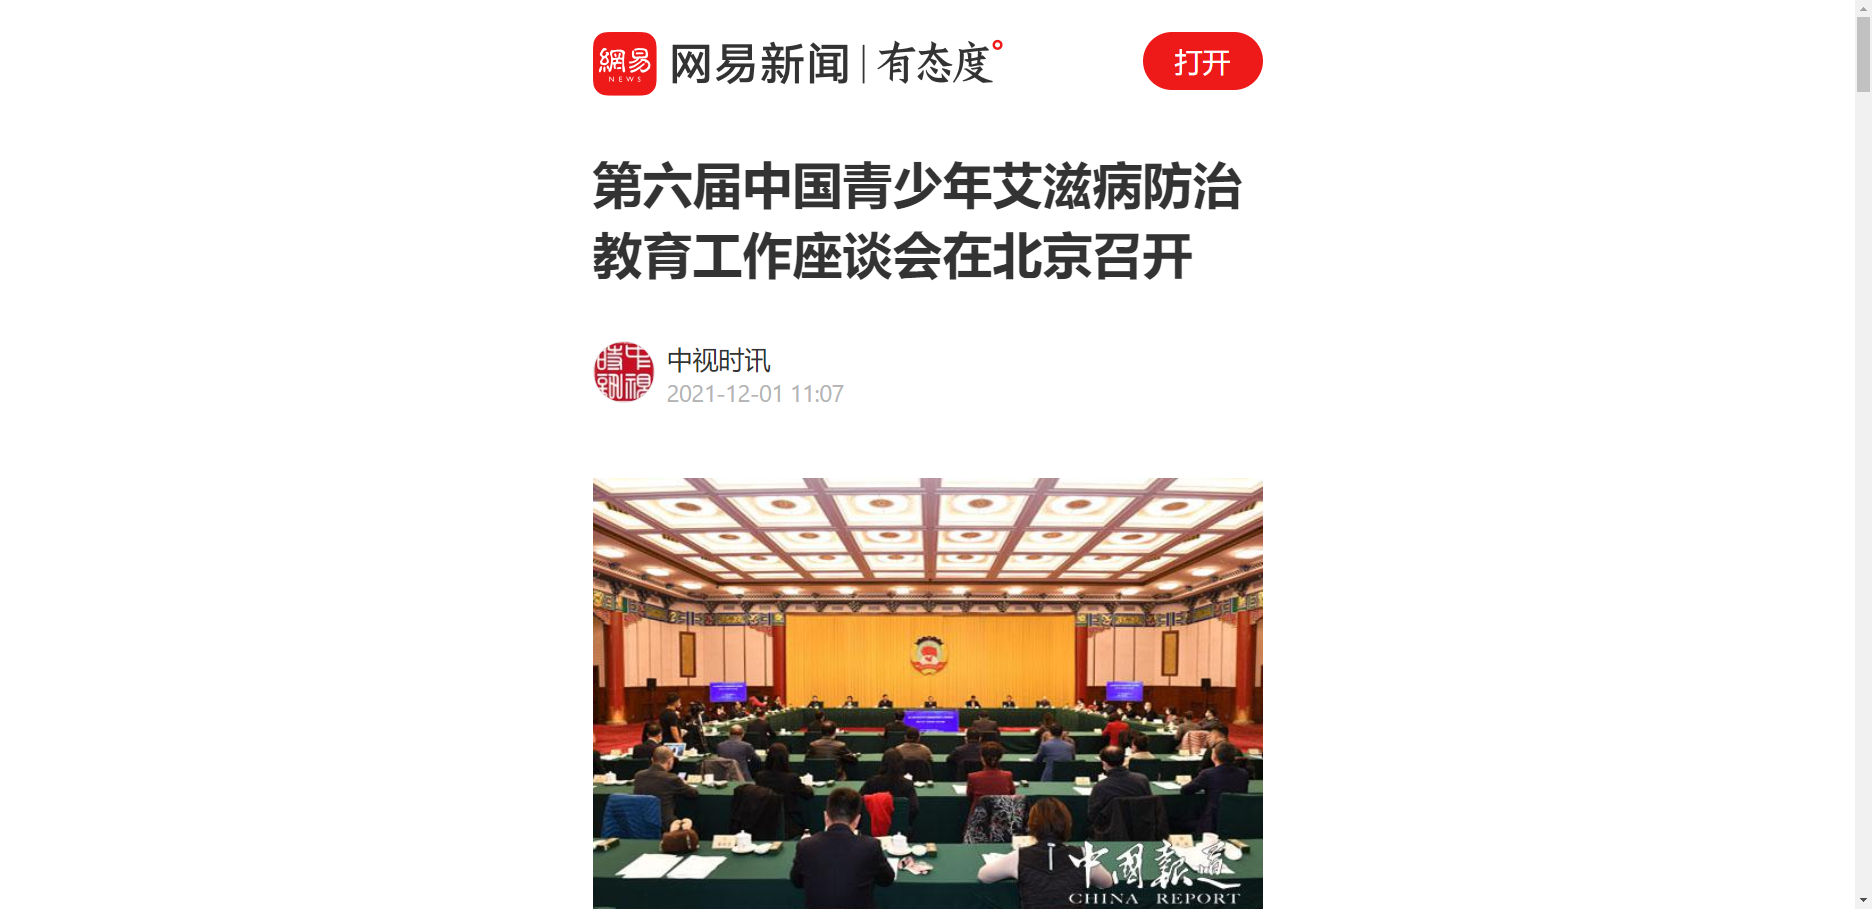 【网易新闻】第六届中国青少年艾滋病防治教育工作座谈会在北京召开